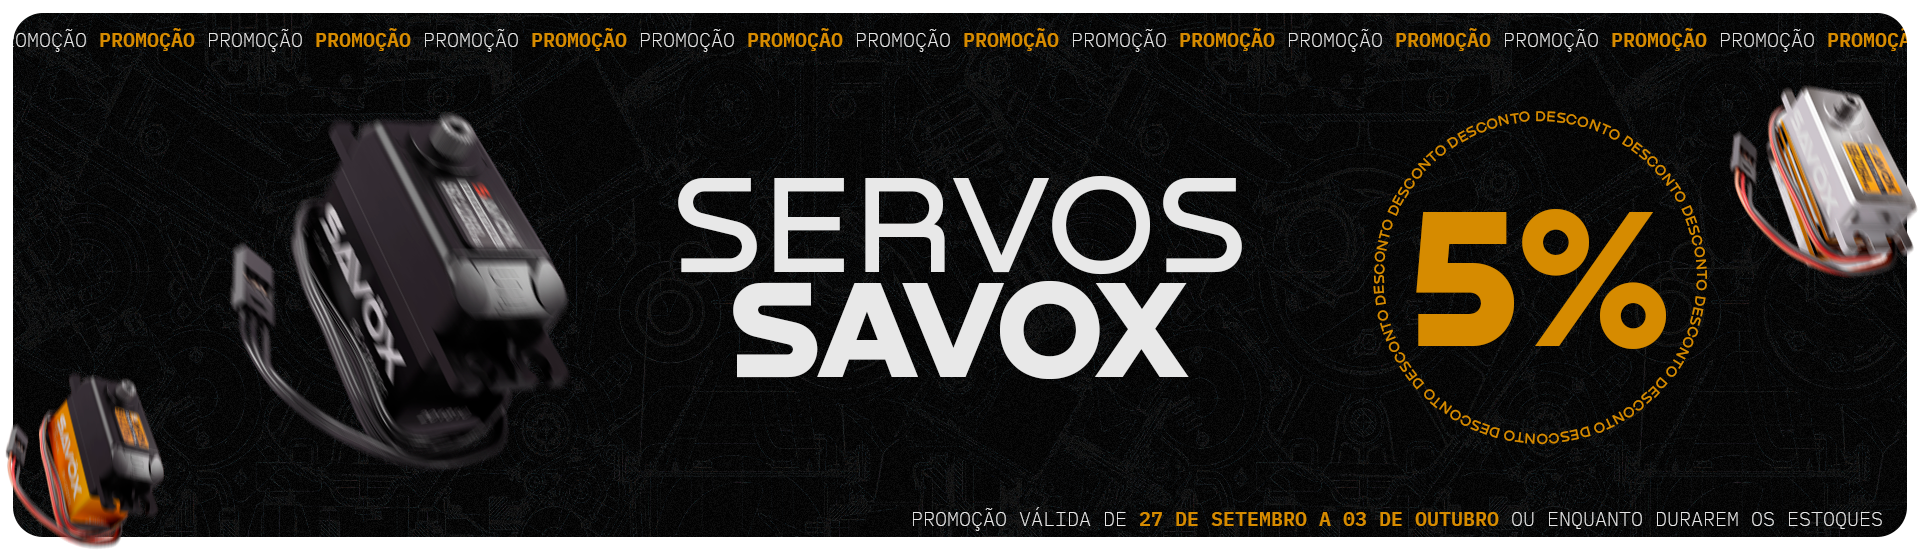 Promo Servos Savox